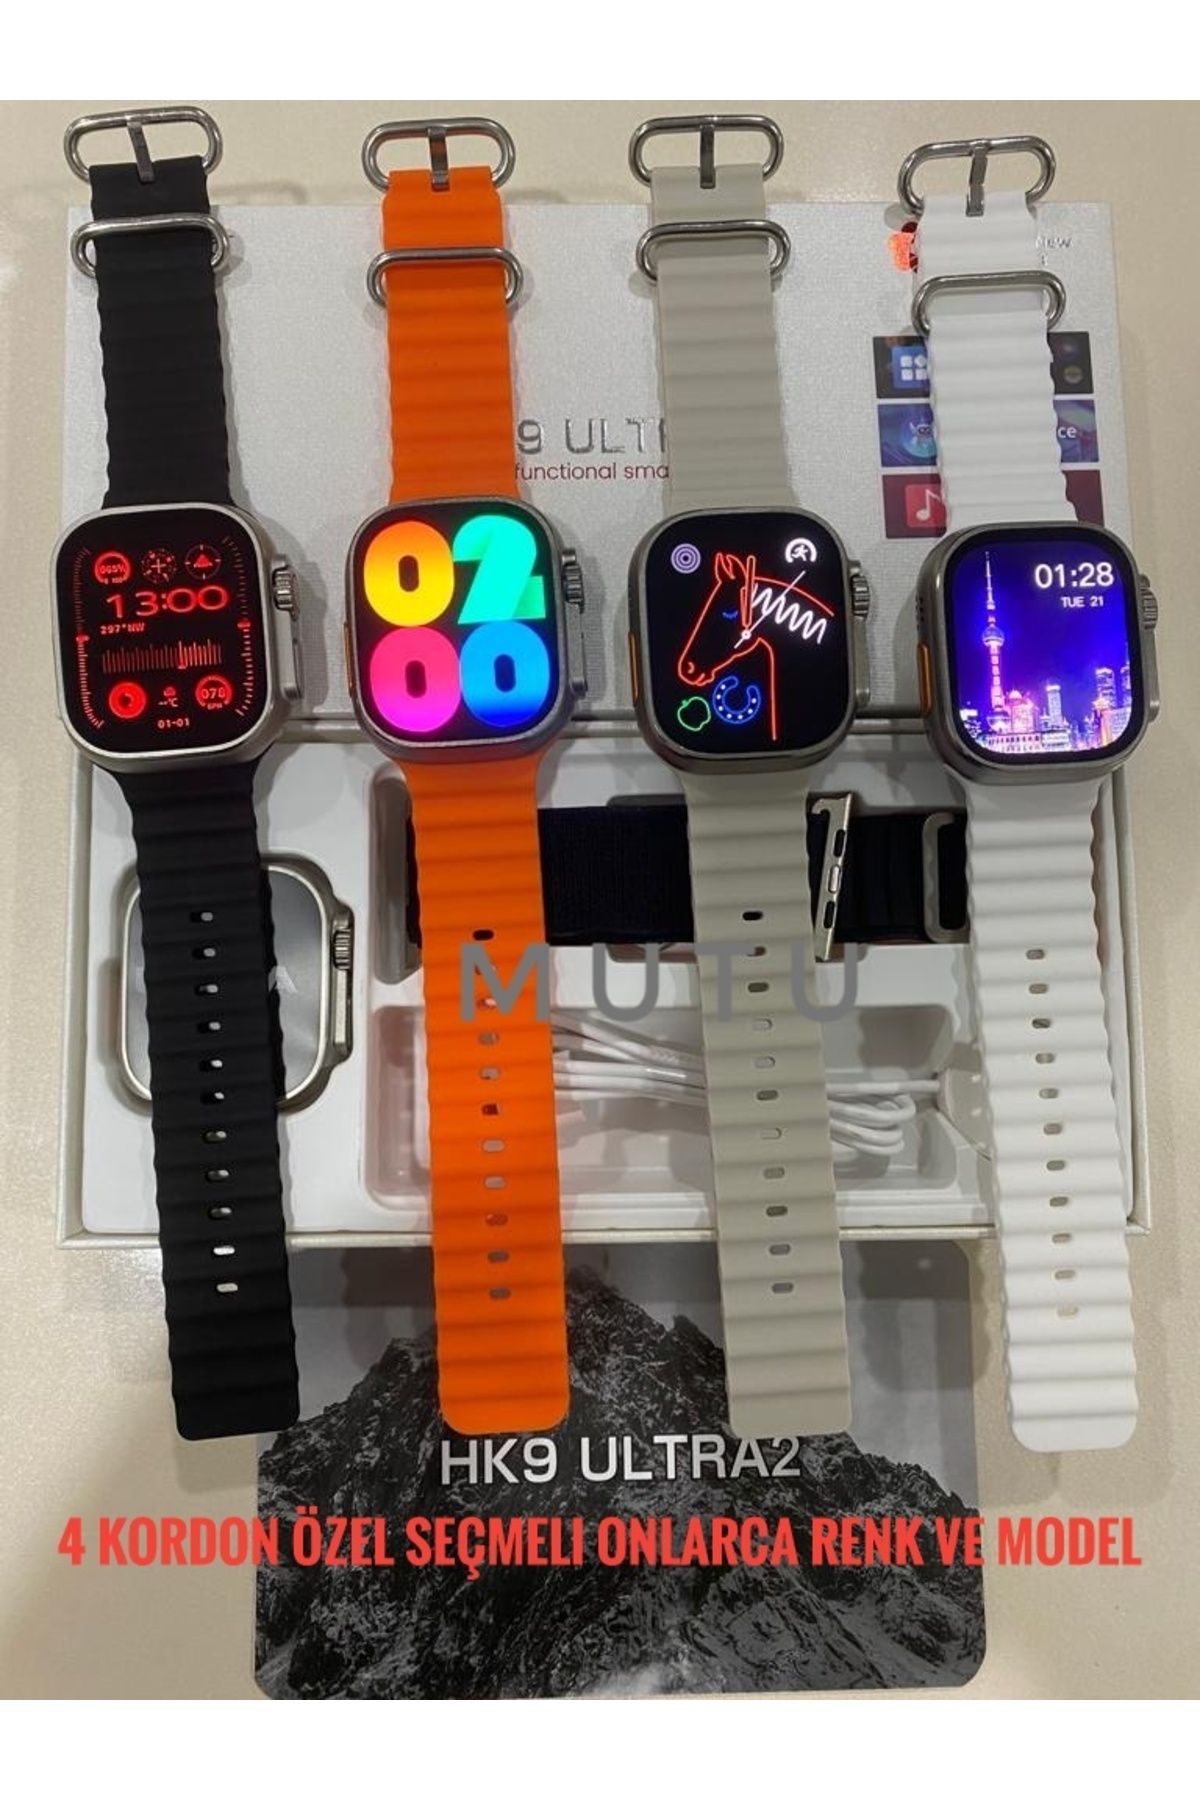 MUTU Hk9 Ultra2 Platinum (4 KORDON ÖZEL SEÇMELİ) Son Versiyon Amoled Ekran Akıllı Saat Smartwatch